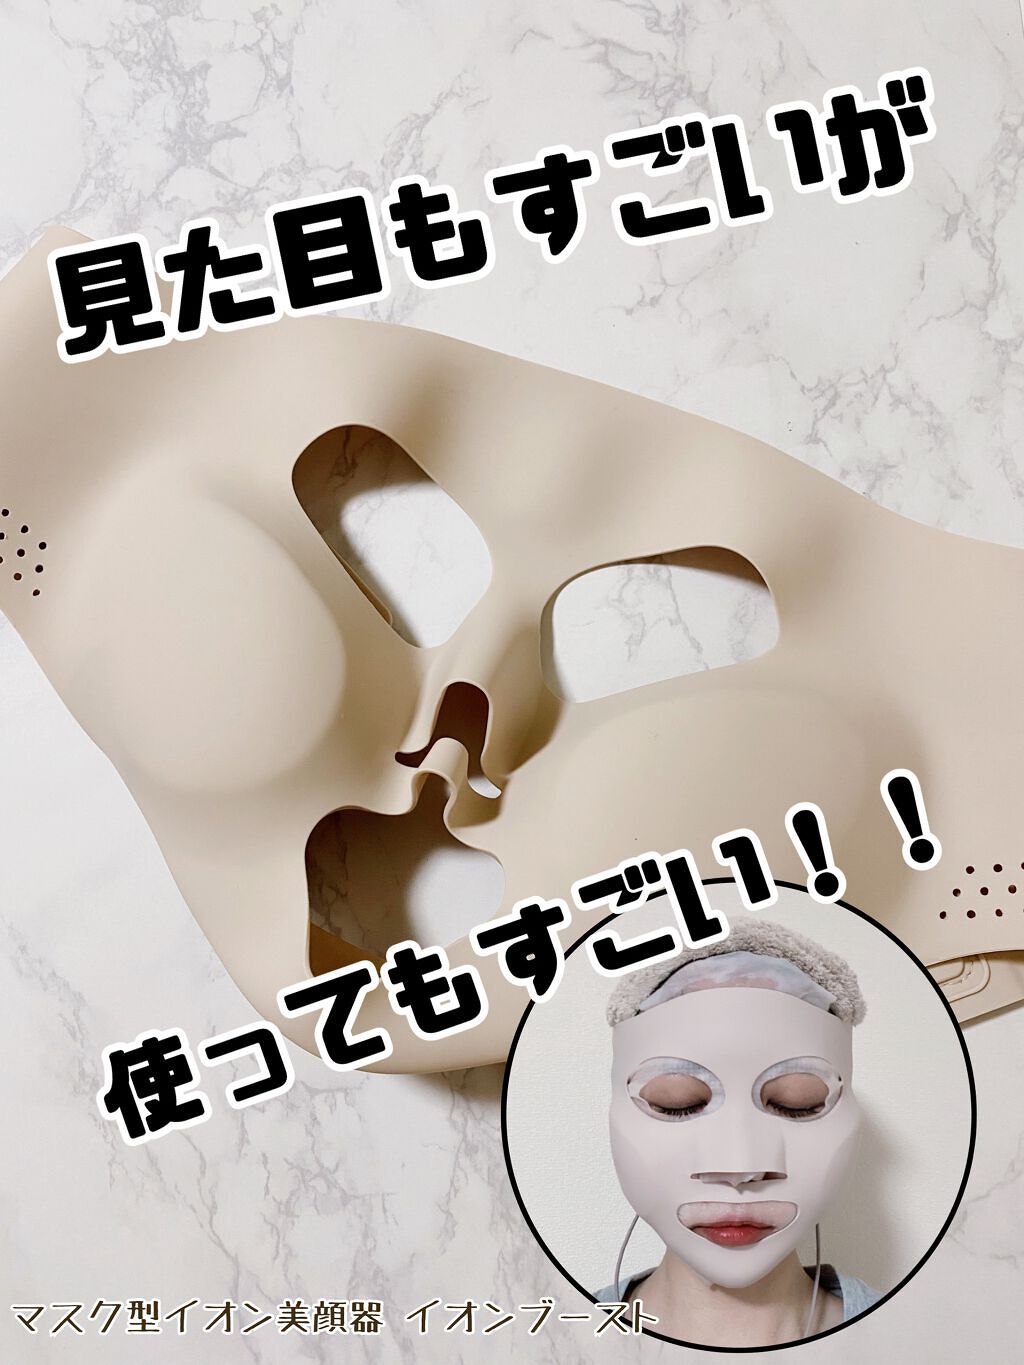 【Panasonic】マスク型イオン美顔器 イオンブースト EH-SM50